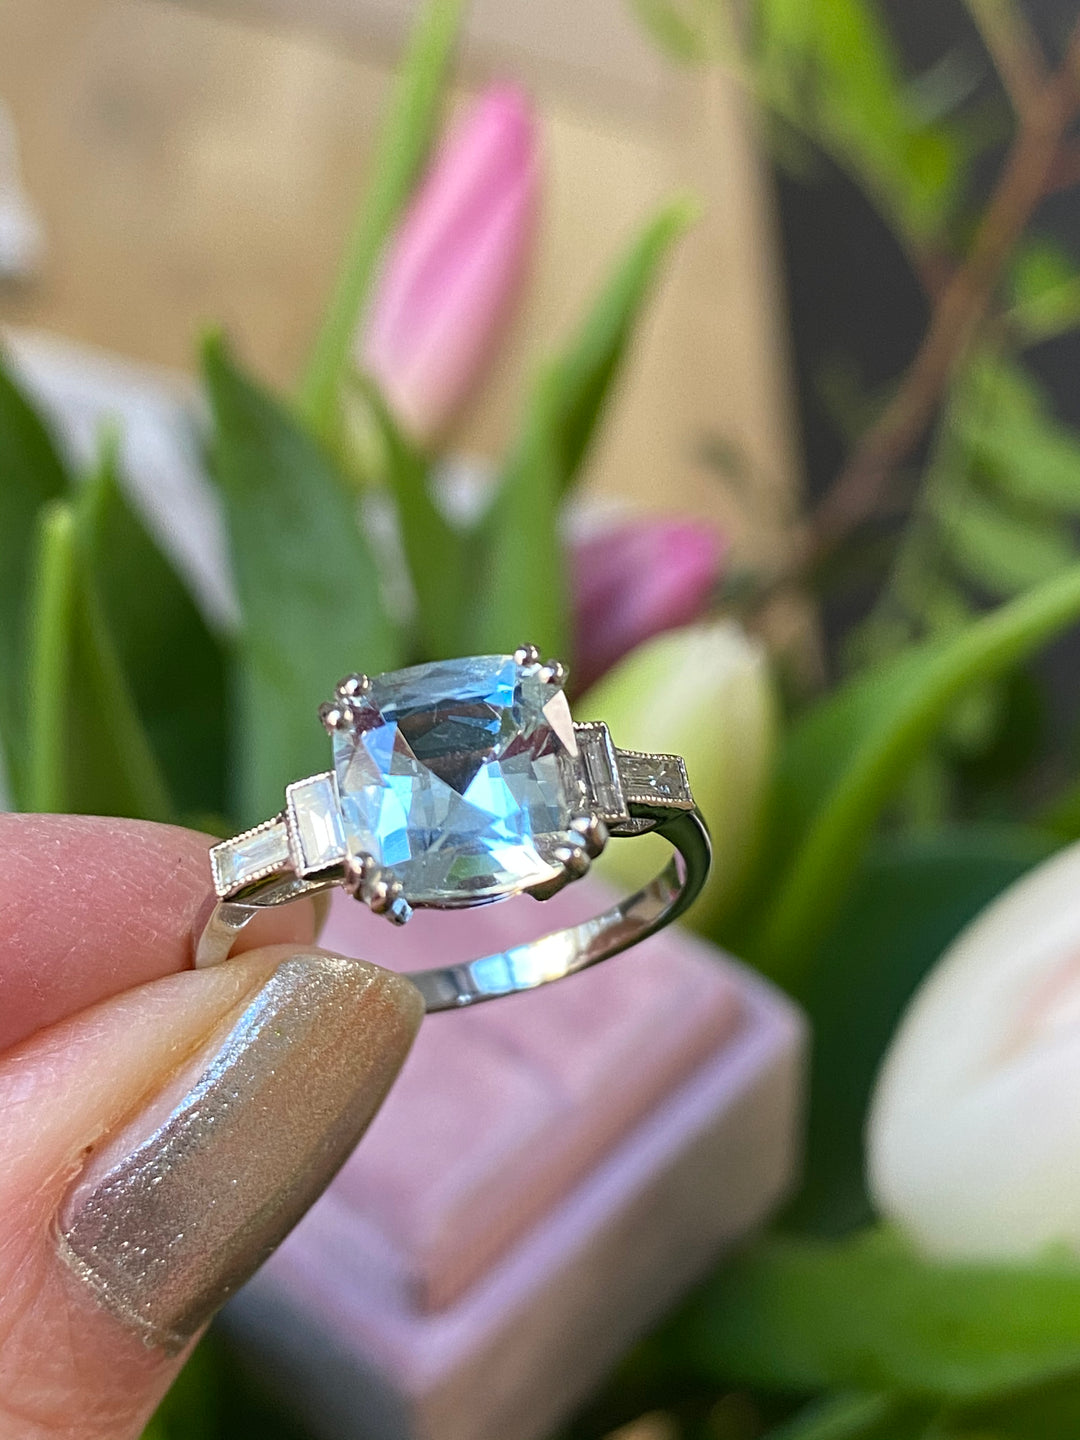 2.00 Carat Cushion Cut Aquamarine and Diamond Art Deco Engagement Ring in Platinum